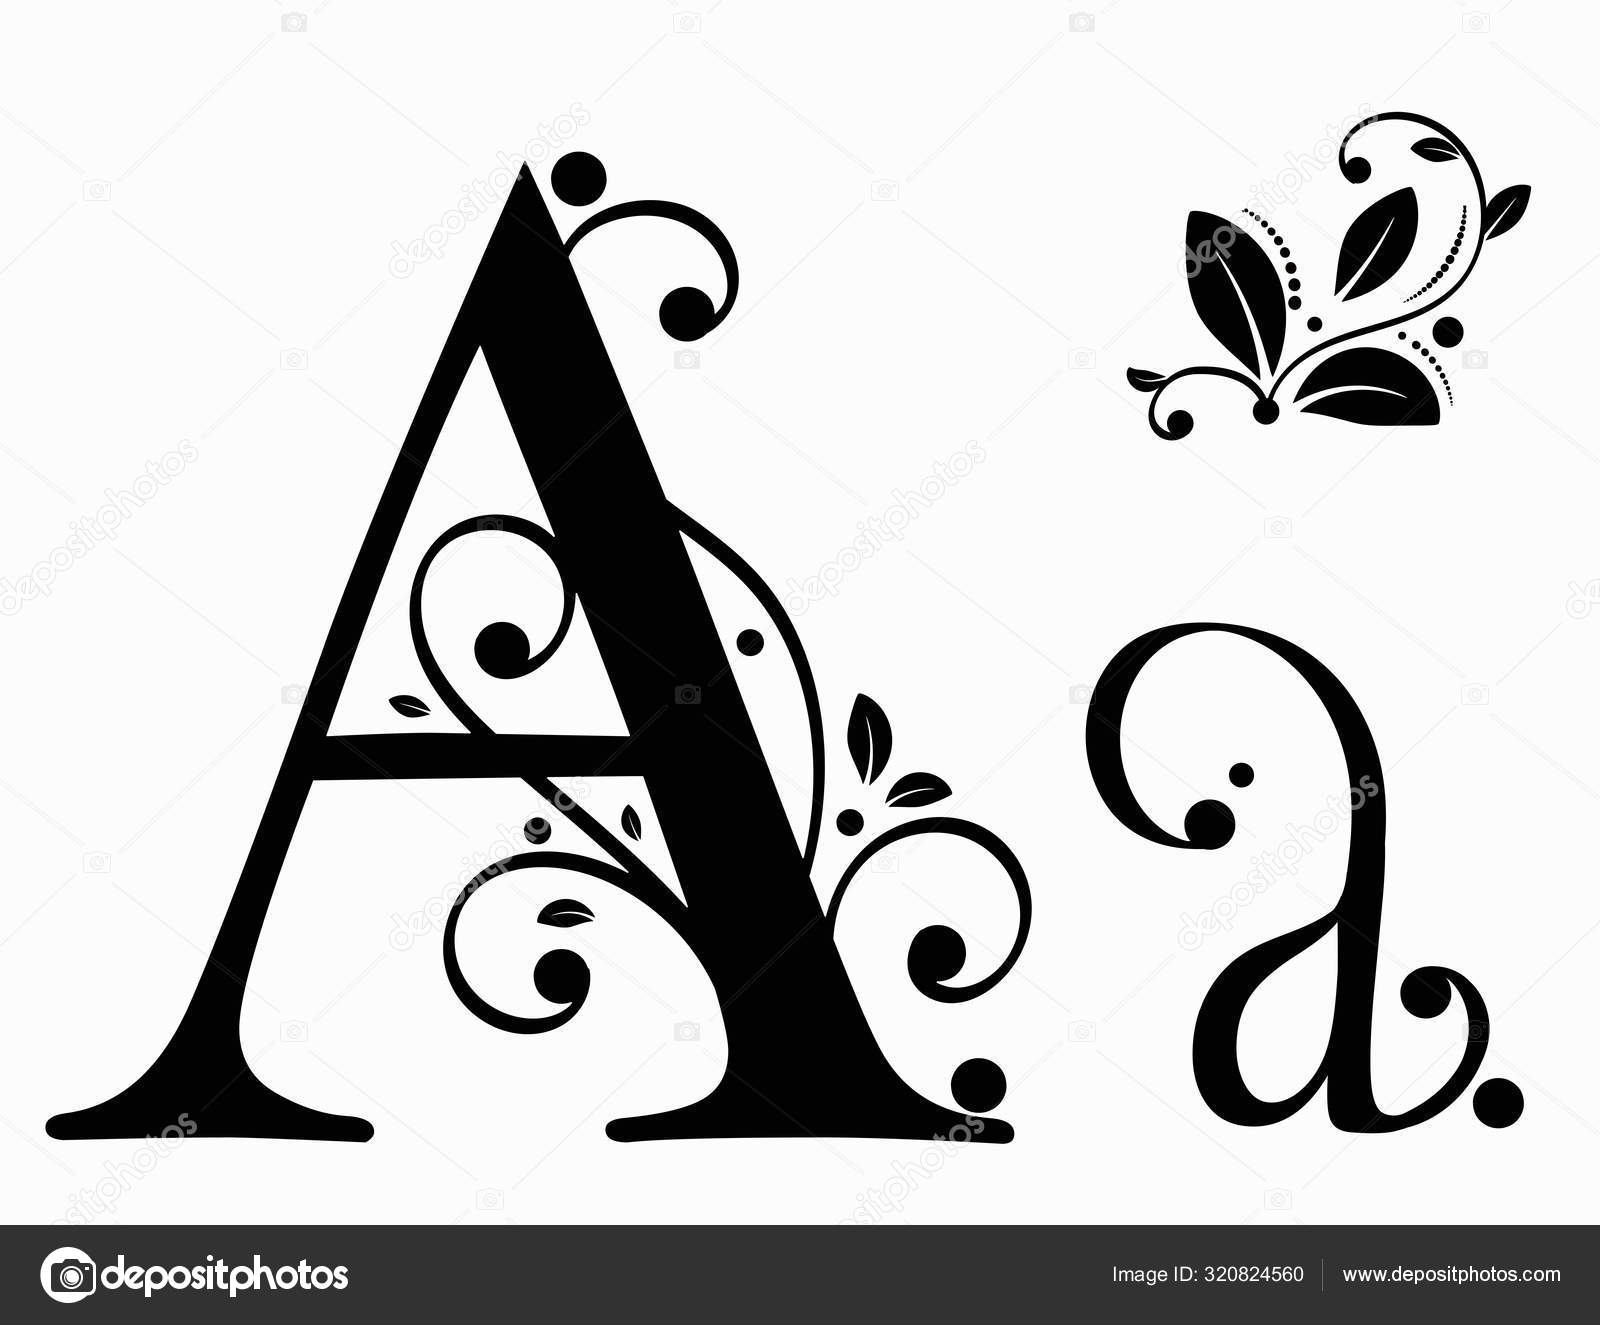 Découpoirs patchwork alphabet majuscules + minuscules